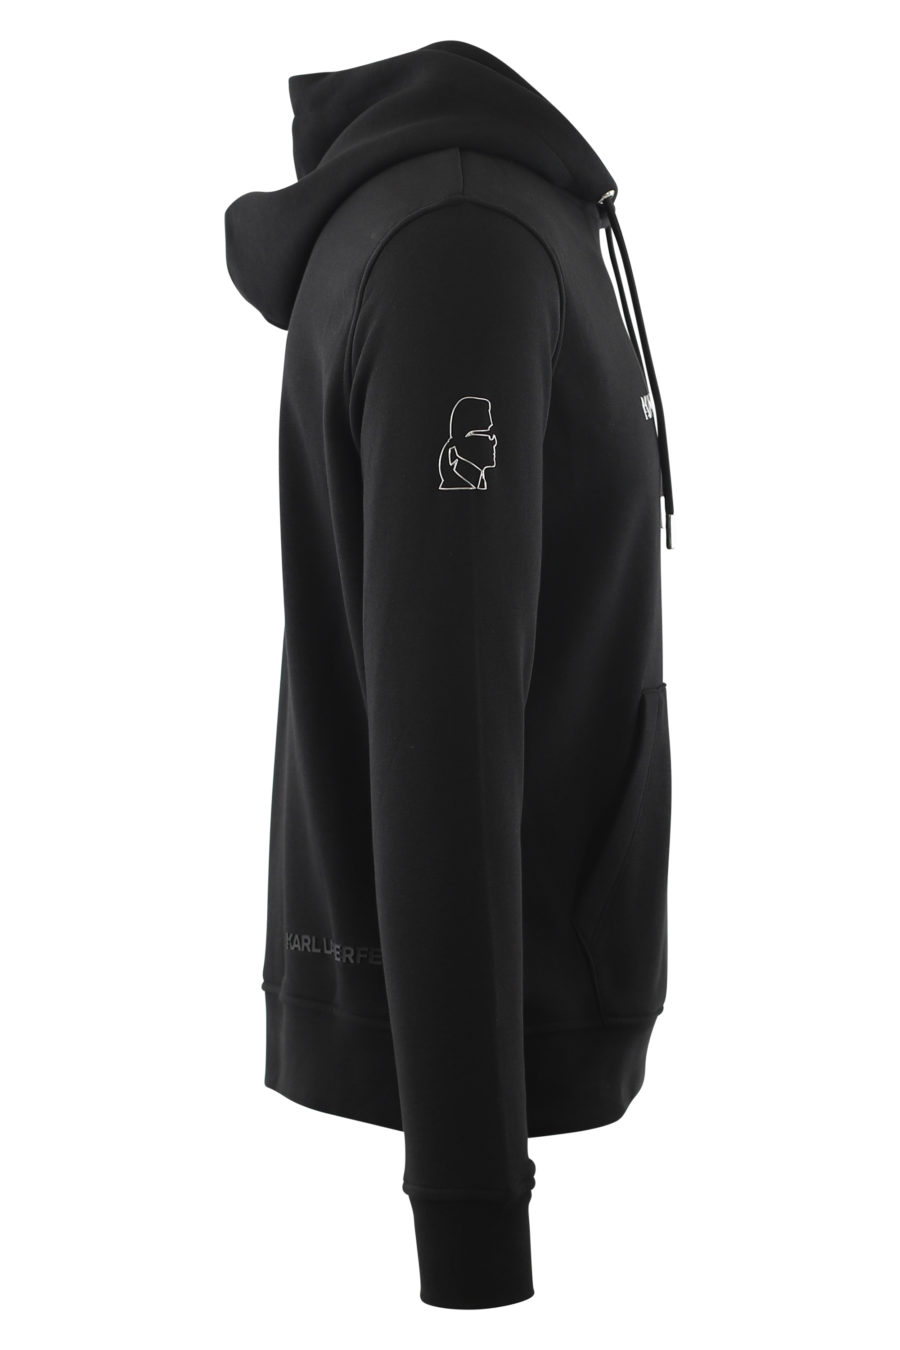 Schwarzes Kapuzensweatshirt mit geprägtem Silberlogo - IMG 6570